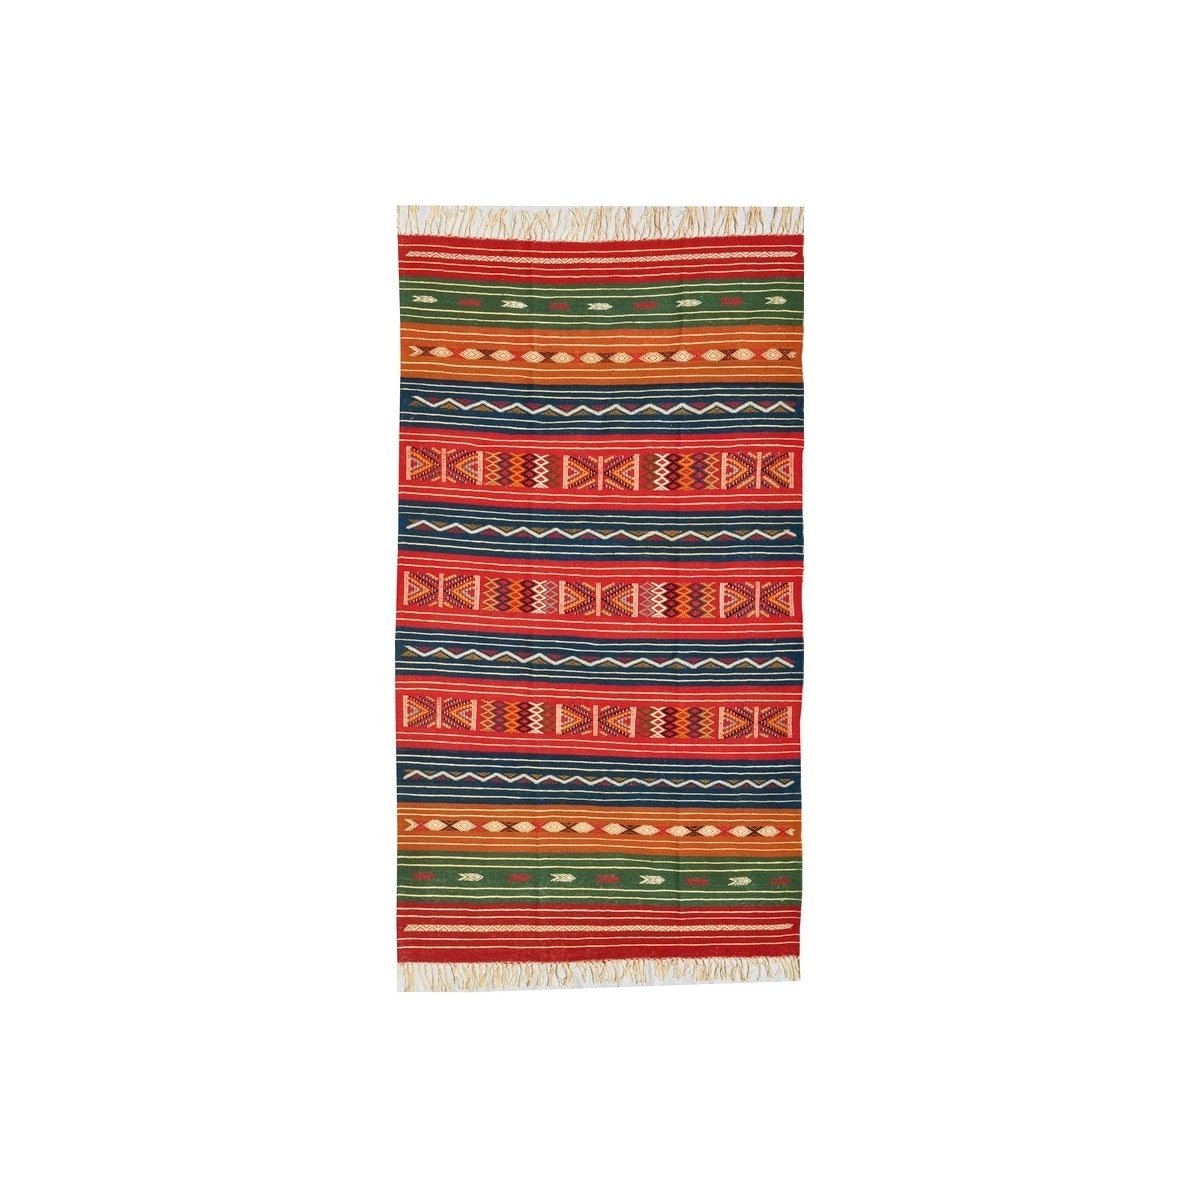 tappeto berbero Tappeto Kilim Mateur 115x200 Multicolore (Fatto a mano, Lana) Tappeto kilim tunisino, in stile marocchino. Tappe